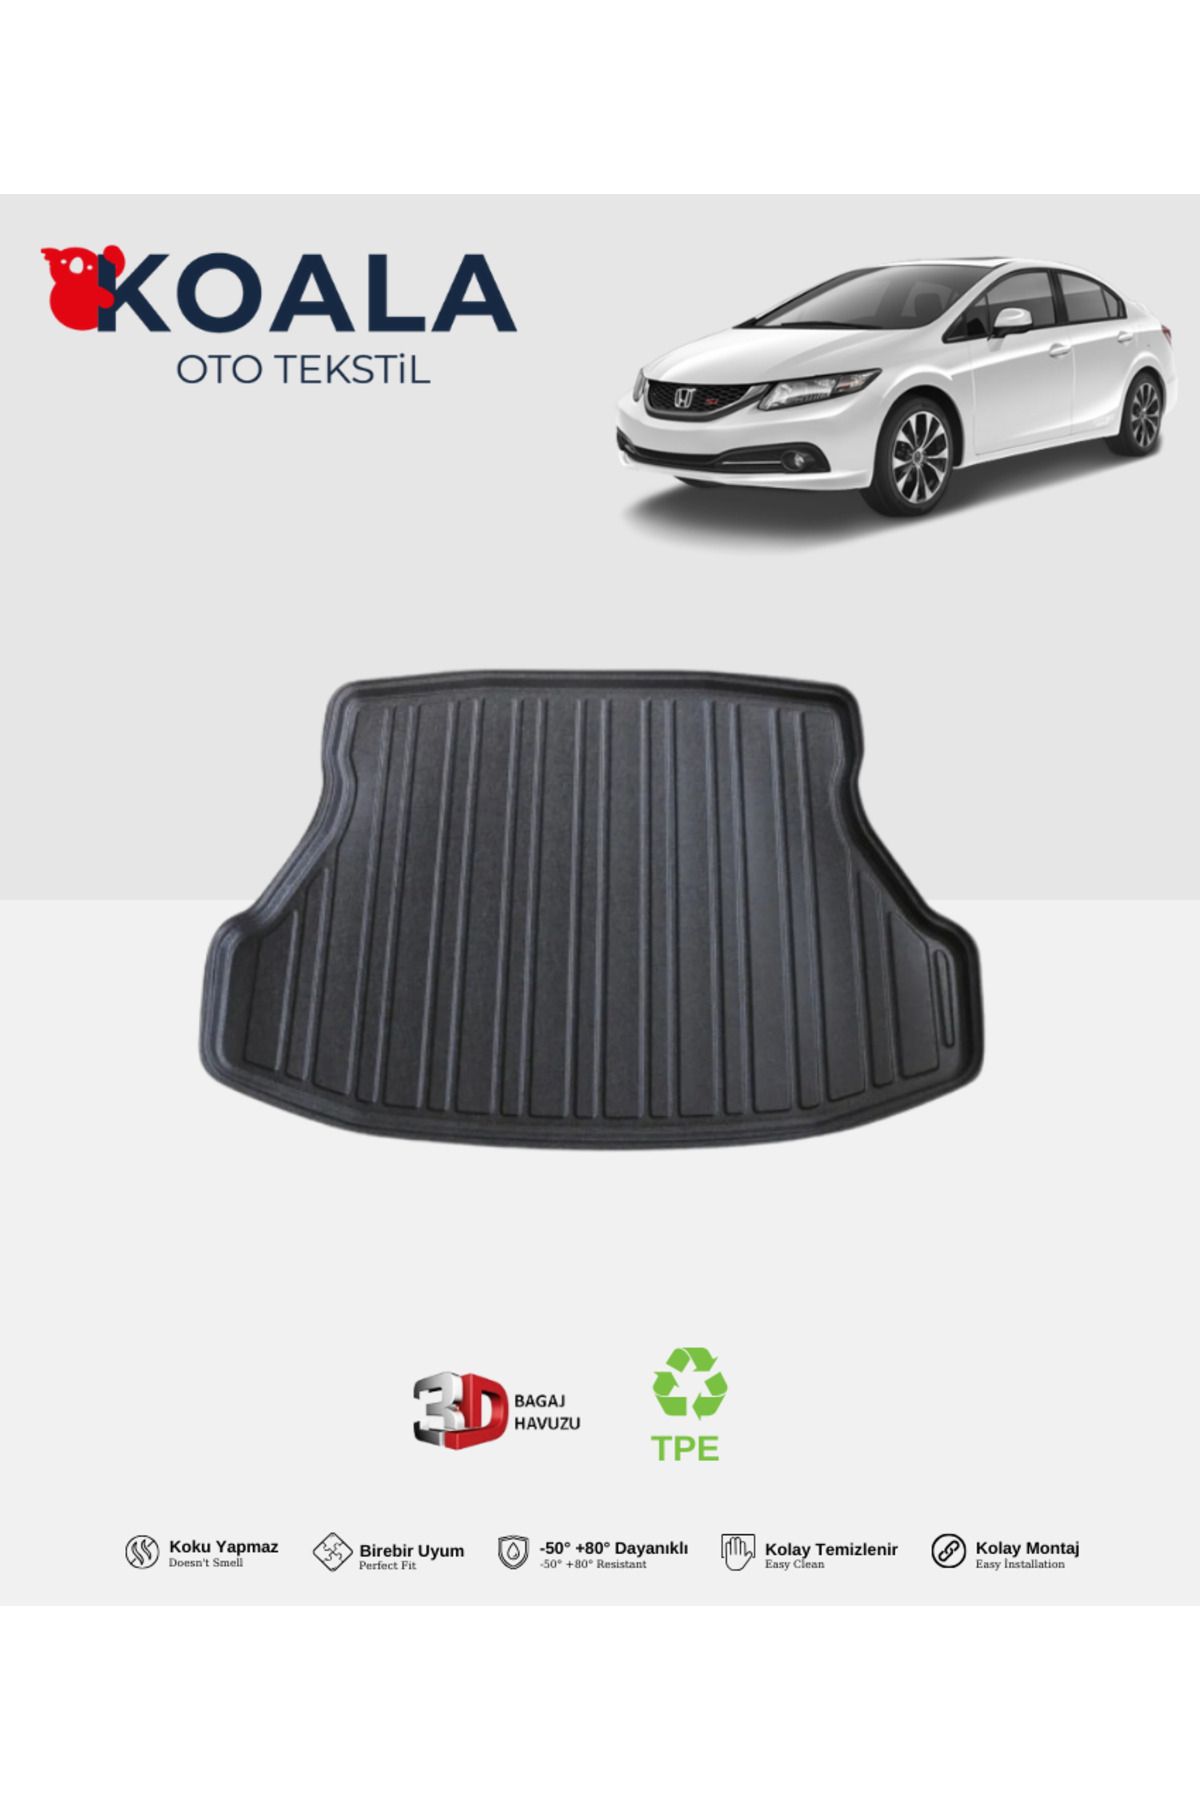 KoalaOtoTekstil Honda Civic Sedan (2012-2015) 3d Bagaj Havuzu